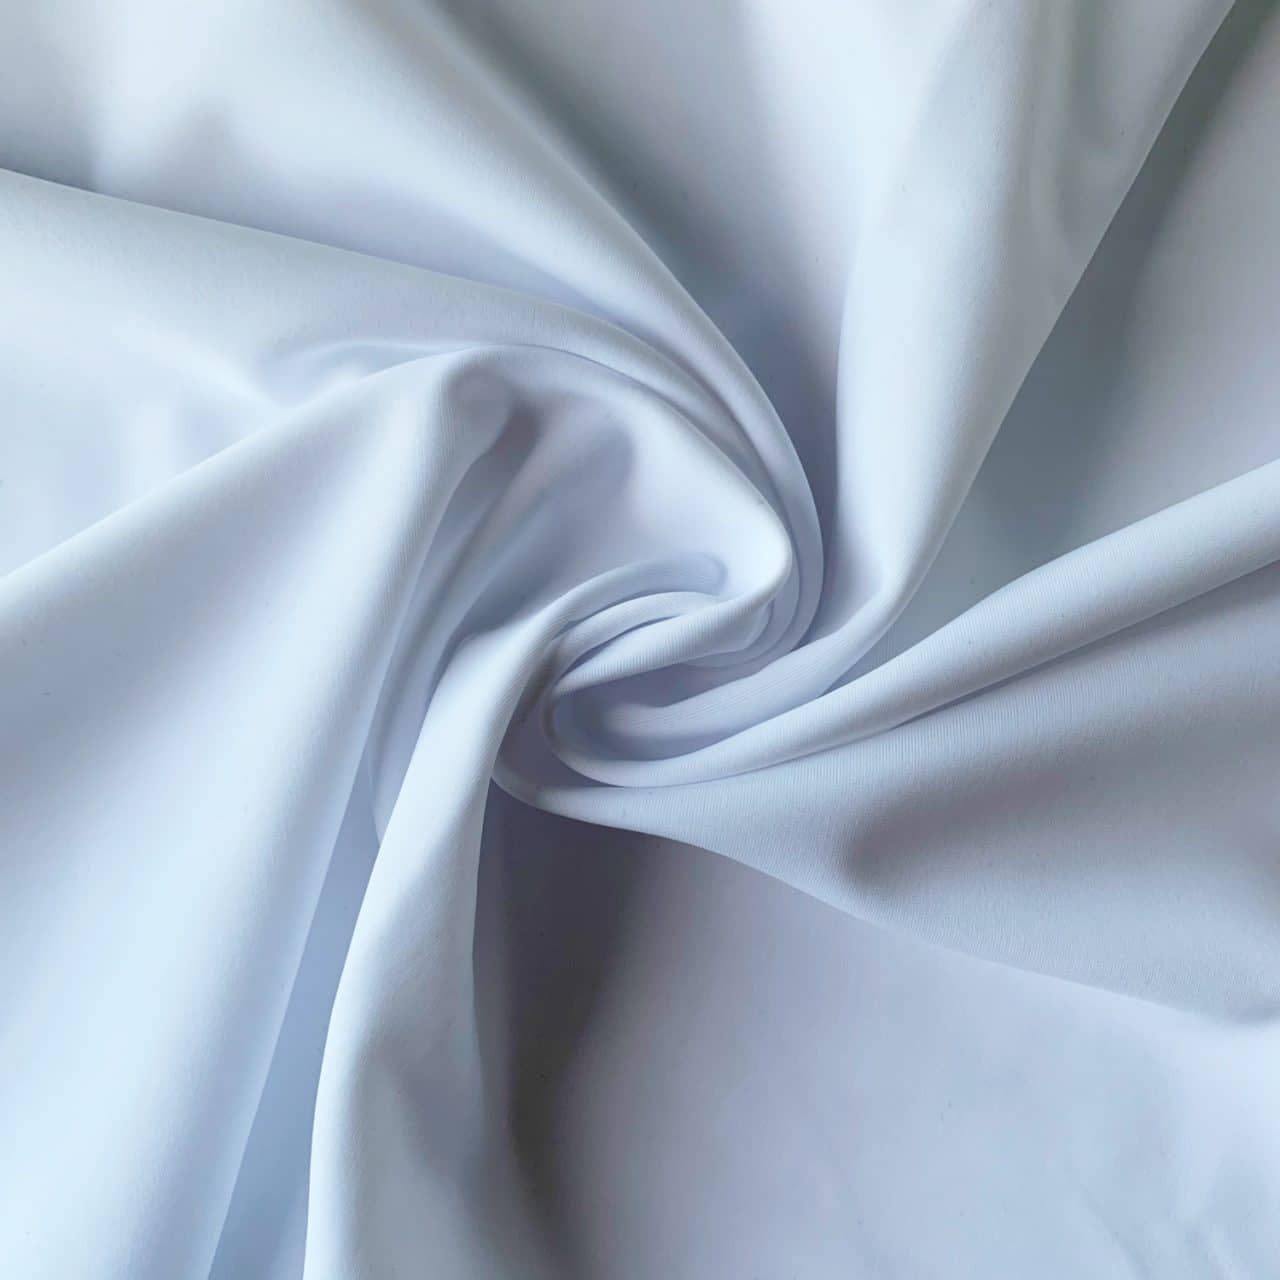 https://www.solidstonefabrics.com/wp-content/uploads/2018/06/Carvico-VITA-Econyl-Recycled-Nylon-Swimwear-Fabric-Bianco-White-Italian-Recycled-Swimwear-Fabric-2.jpg